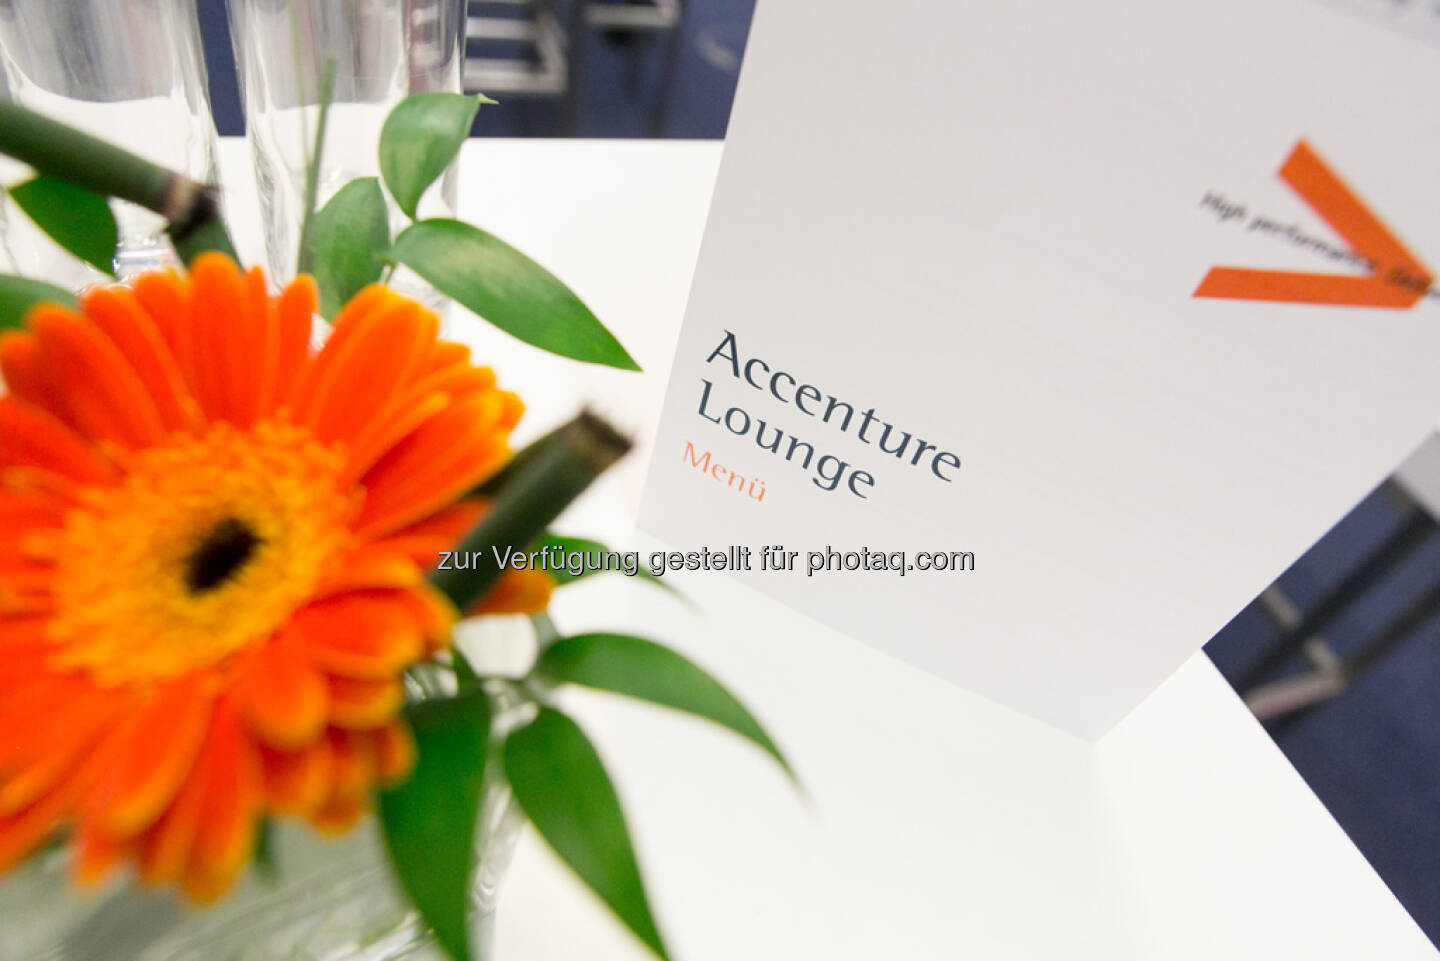 Accenture Lounge, Programm, Blume